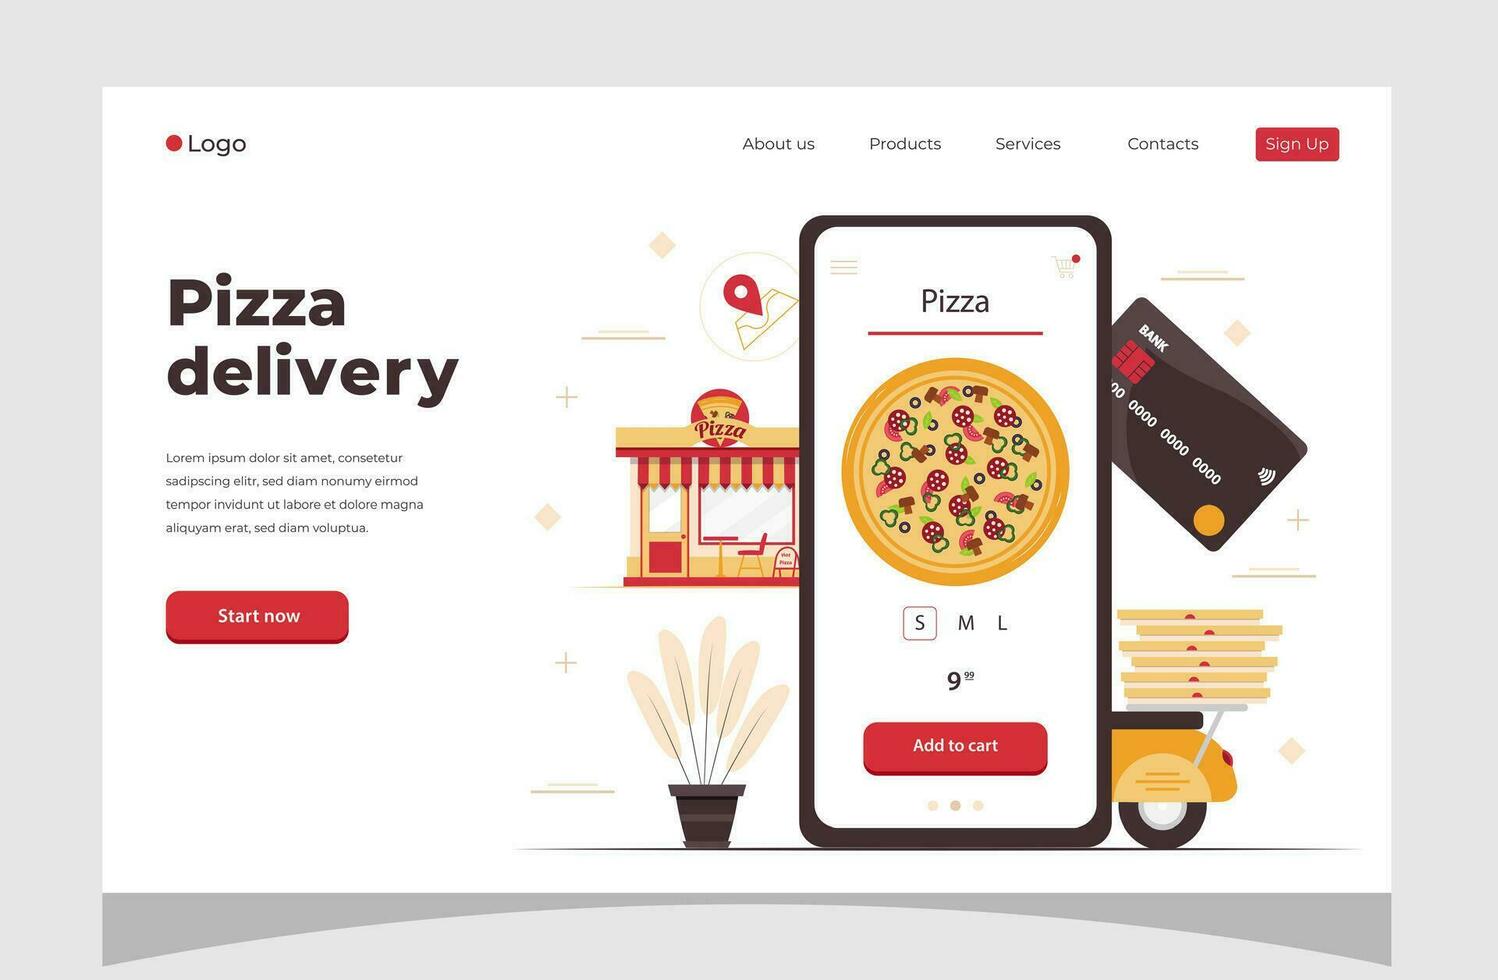 voedsel online bestellen smartphone. pizza levering. voedsel levering concept voor banier, website ontwerp of landen web bladzijde. vector